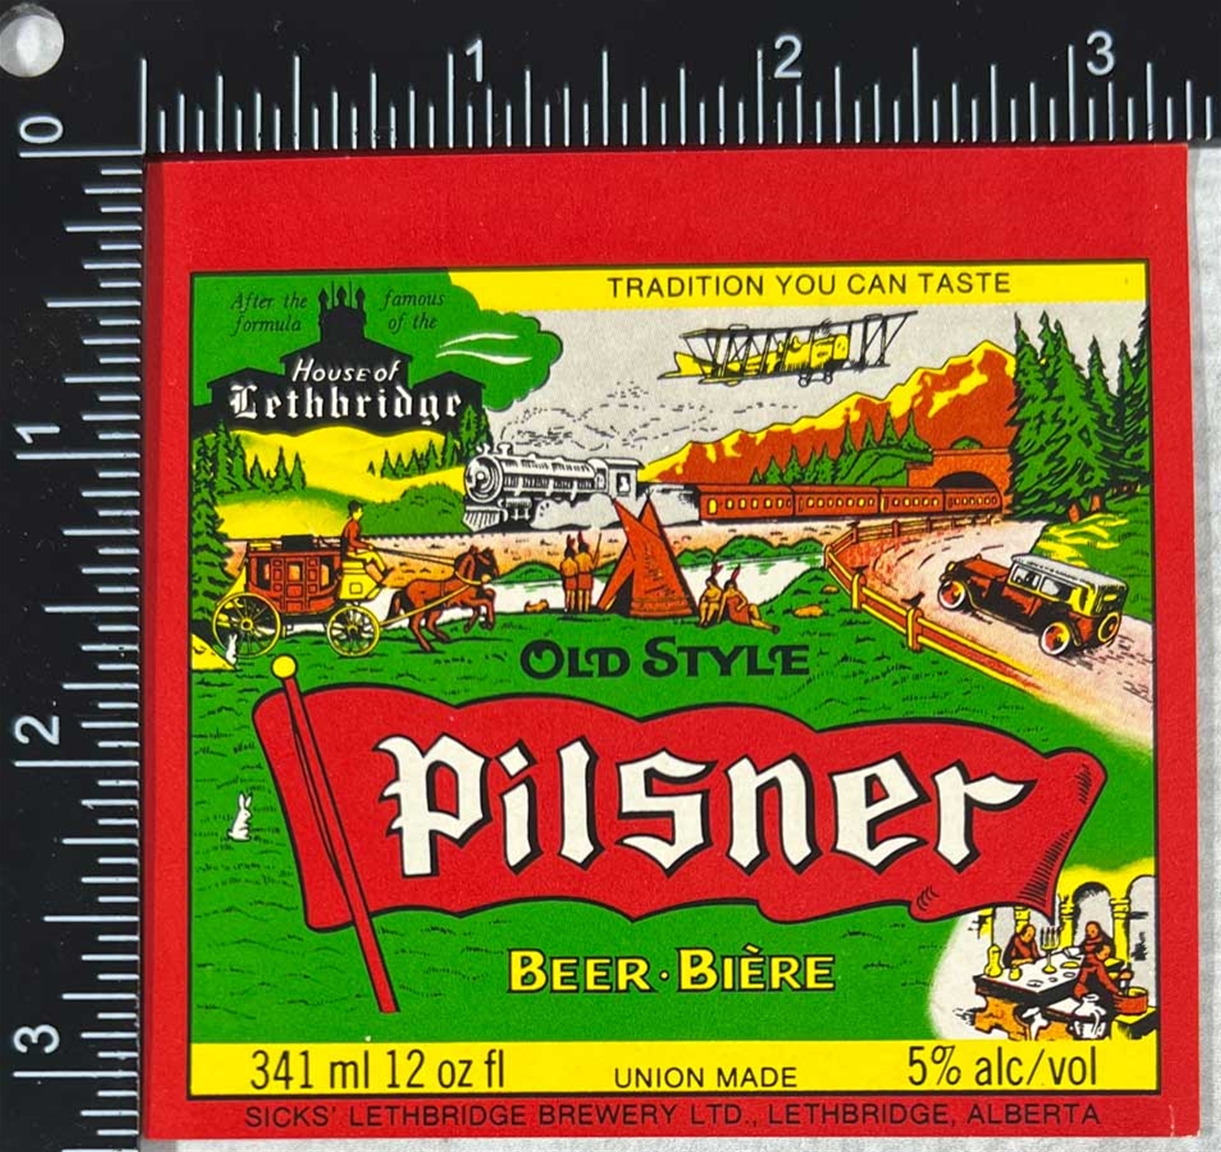 Old Style Pilsner Beer Bière Label